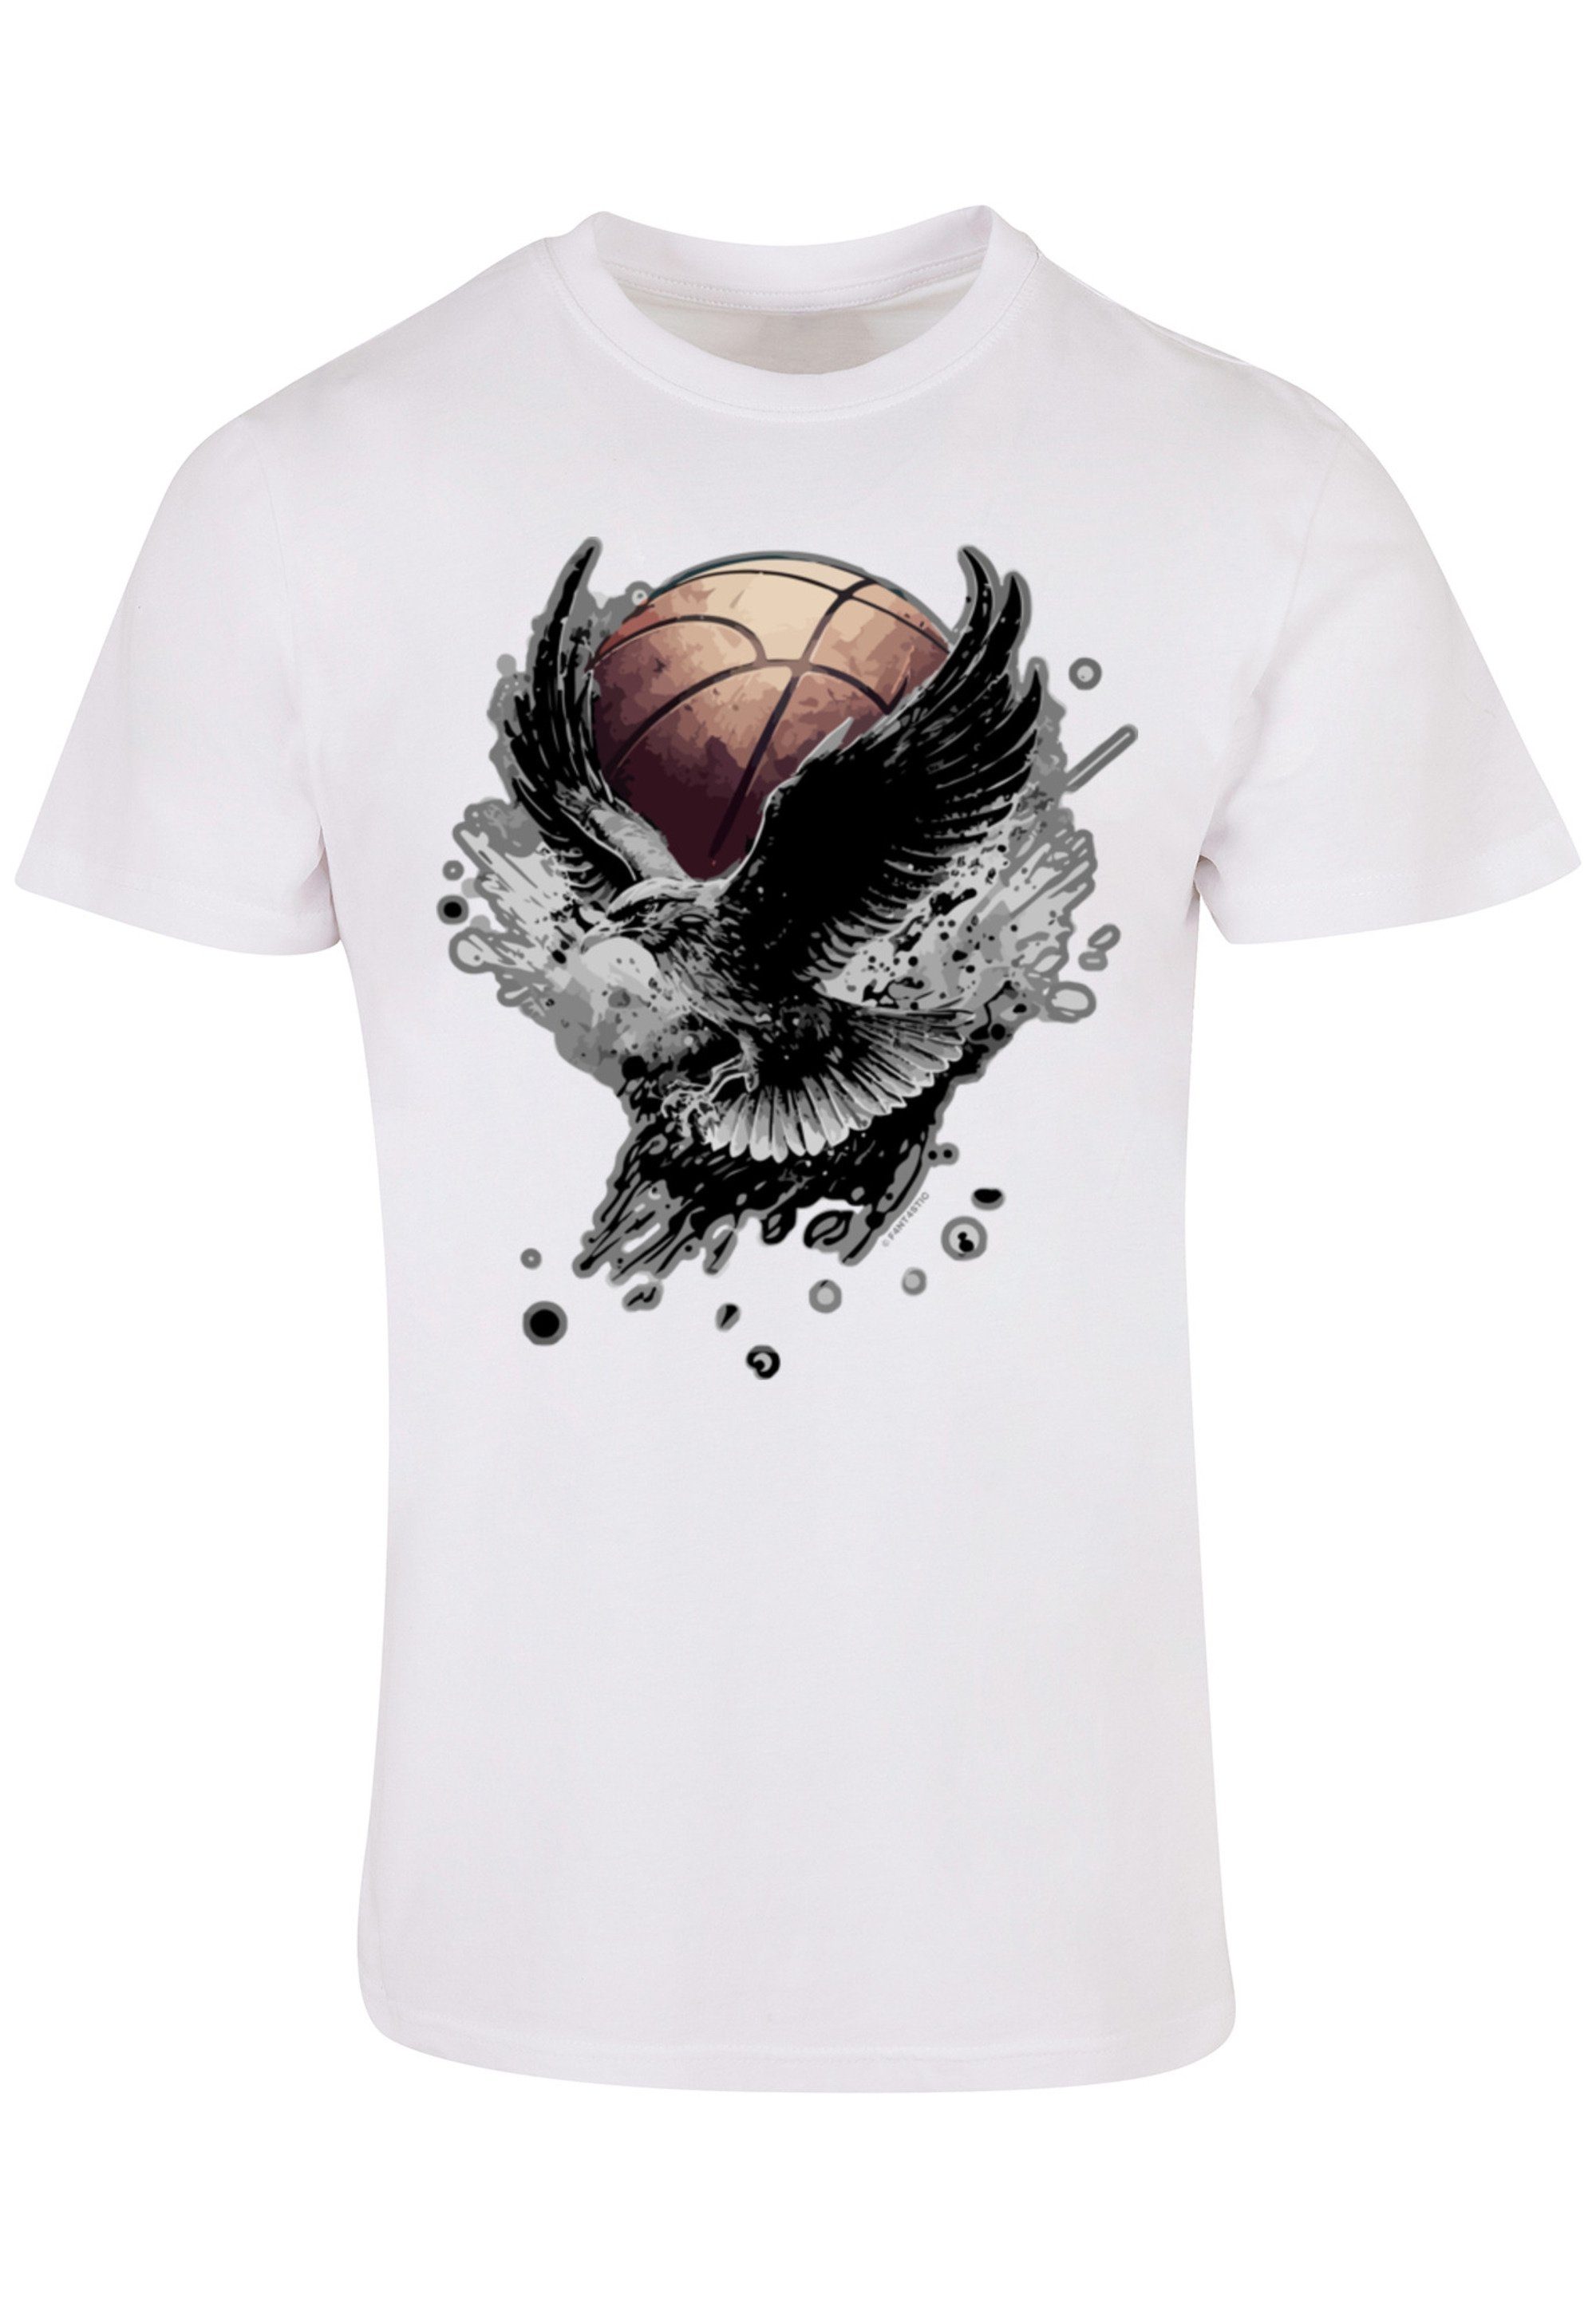 Tragekomfort mit Adler Baumwollstoff T-Shirt Basketball Print, weicher F4NT4STIC hohem Sehr